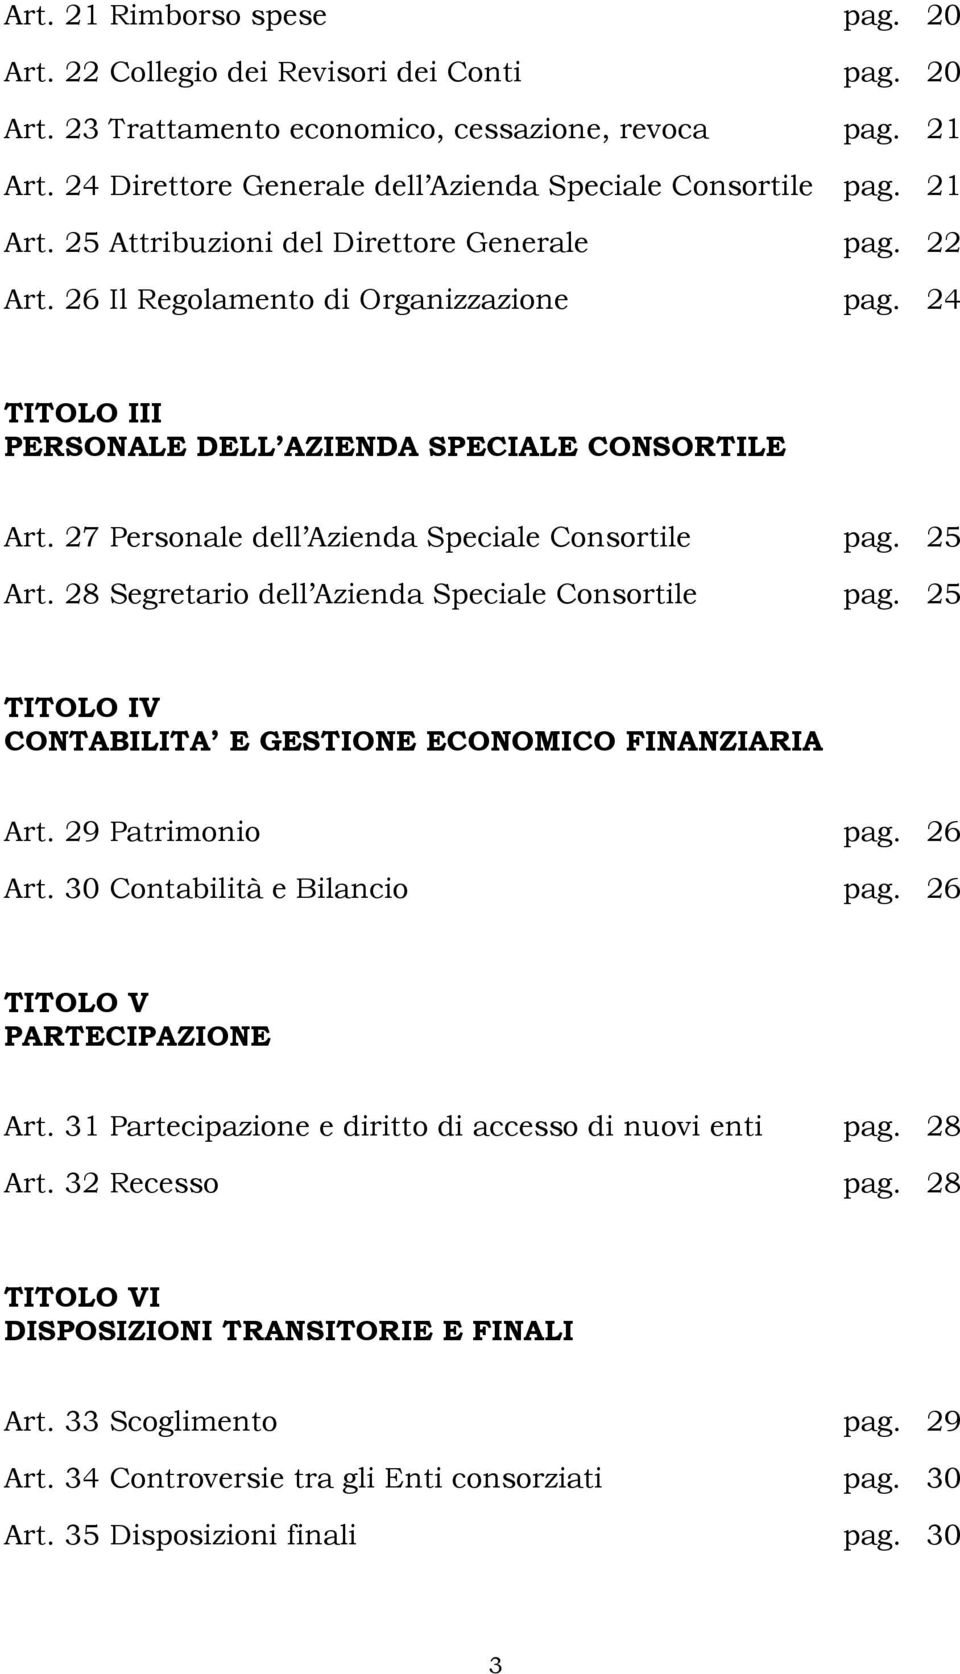 24 TITOLO III PERSONALE DELL AZIENDA SPECIALE CONSORTILE Art. 27 Personale dell Azienda Speciale Consortile pag. 25 Art. 28 Segretario dell Azienda Speciale Consortile pag.